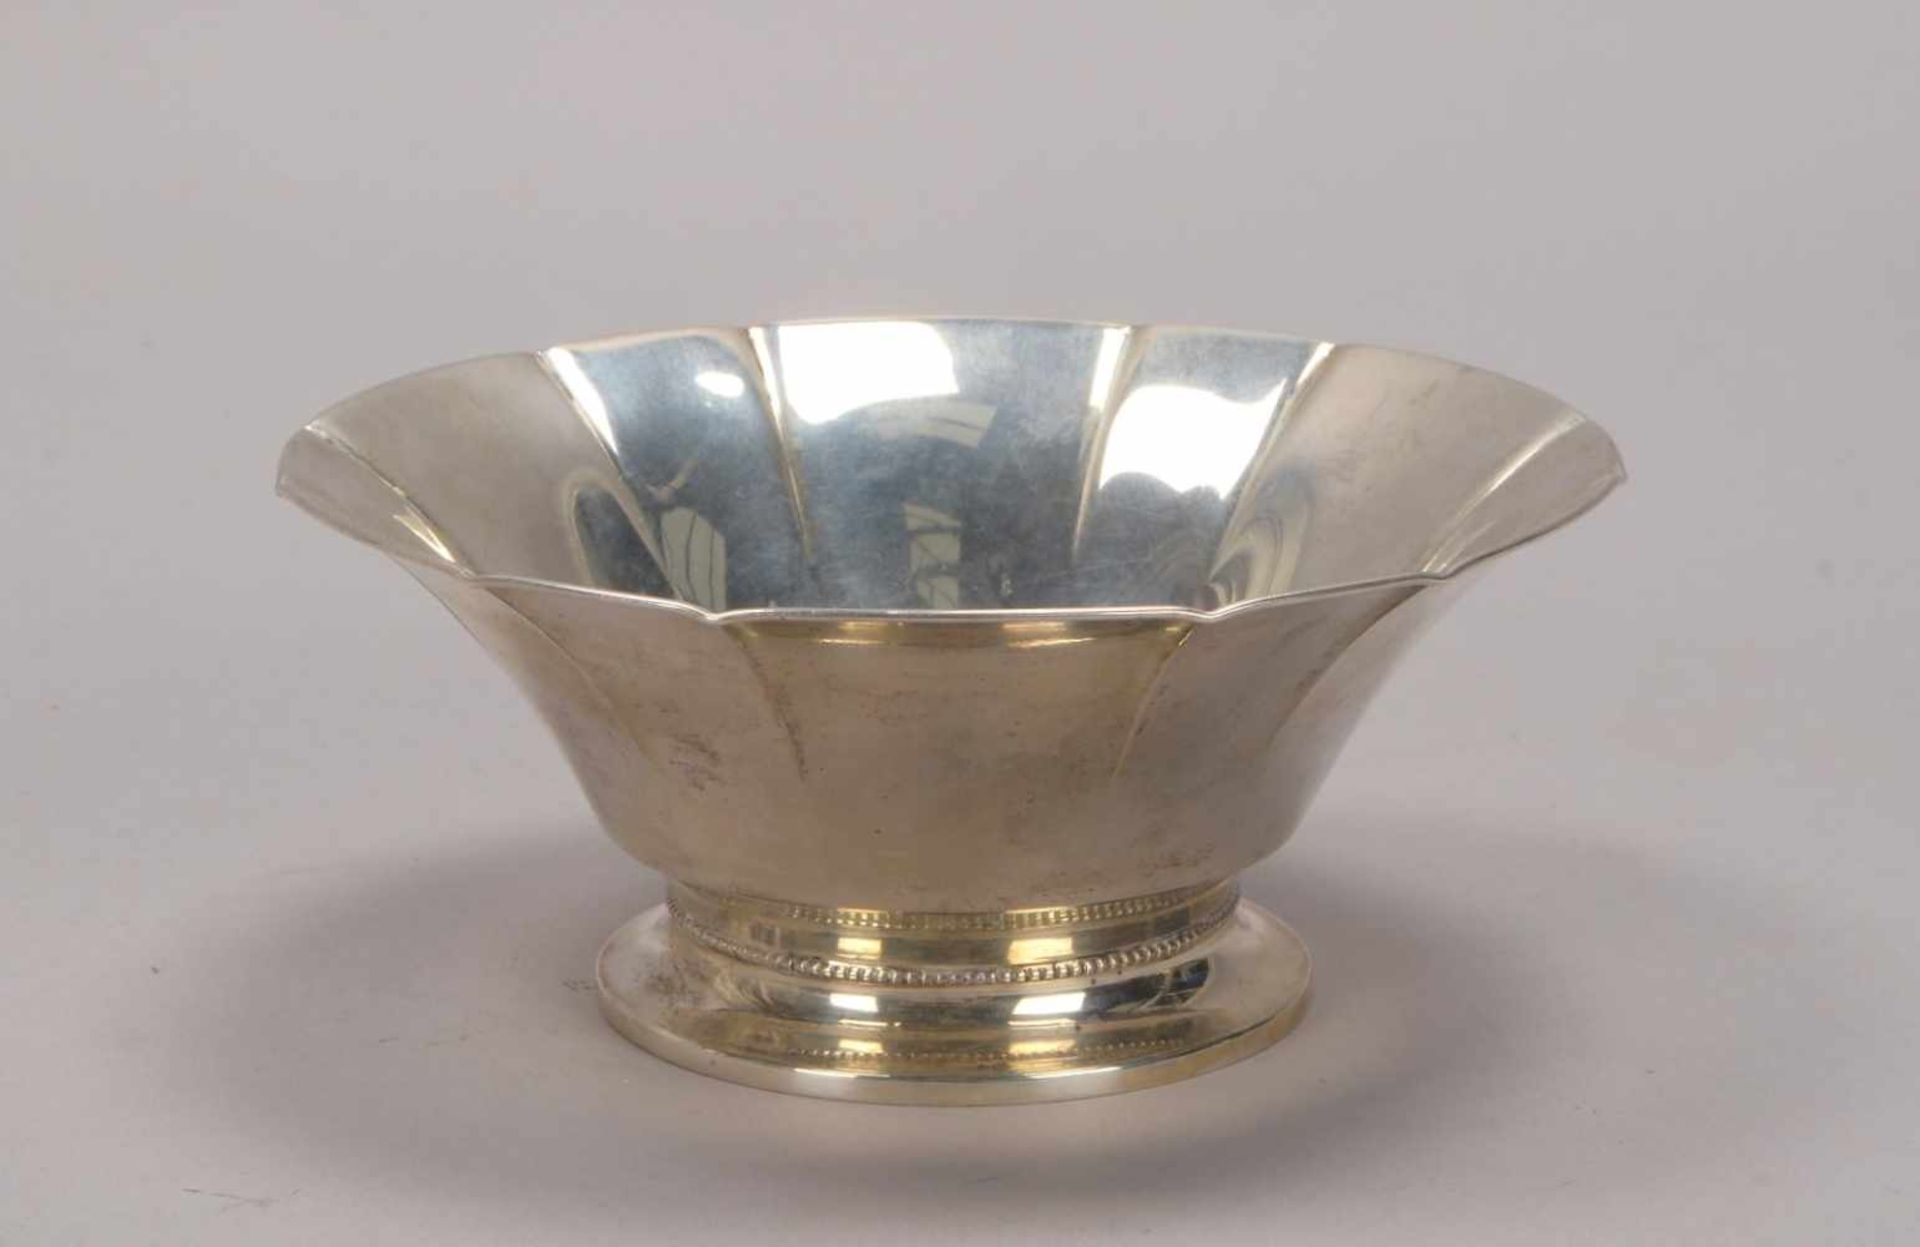 Schale (Schweden), 830 Silber, mehrfach punziert; Höhe 7 cm, Durchmesser Ø 16,5 cm, Gewicht 167 g